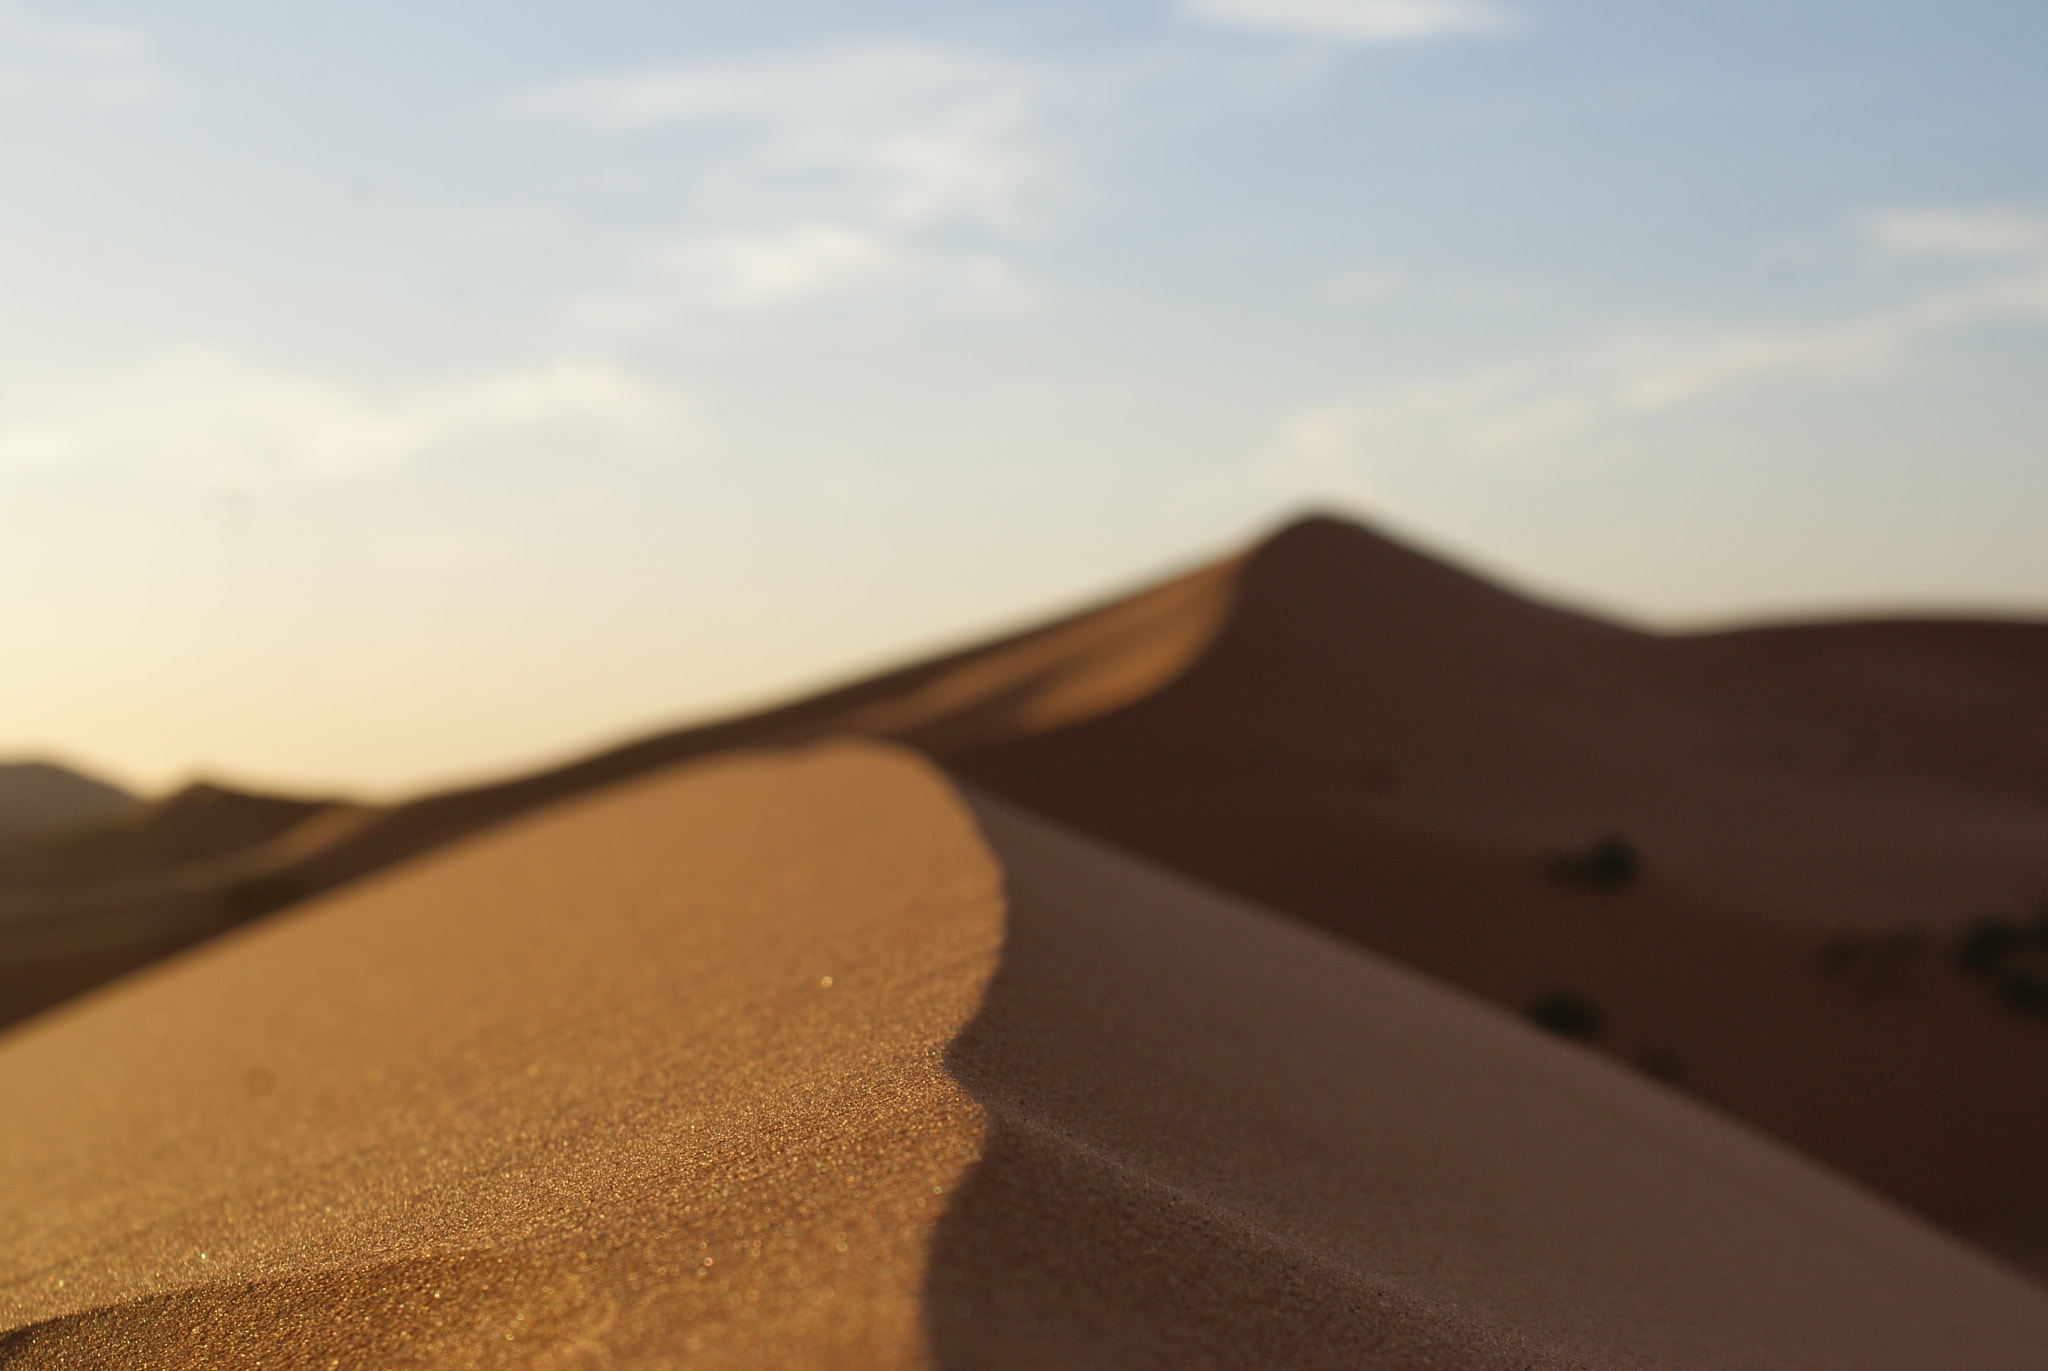 Sony Alpha DSLR-A300 sample photo. Sahara desert photography